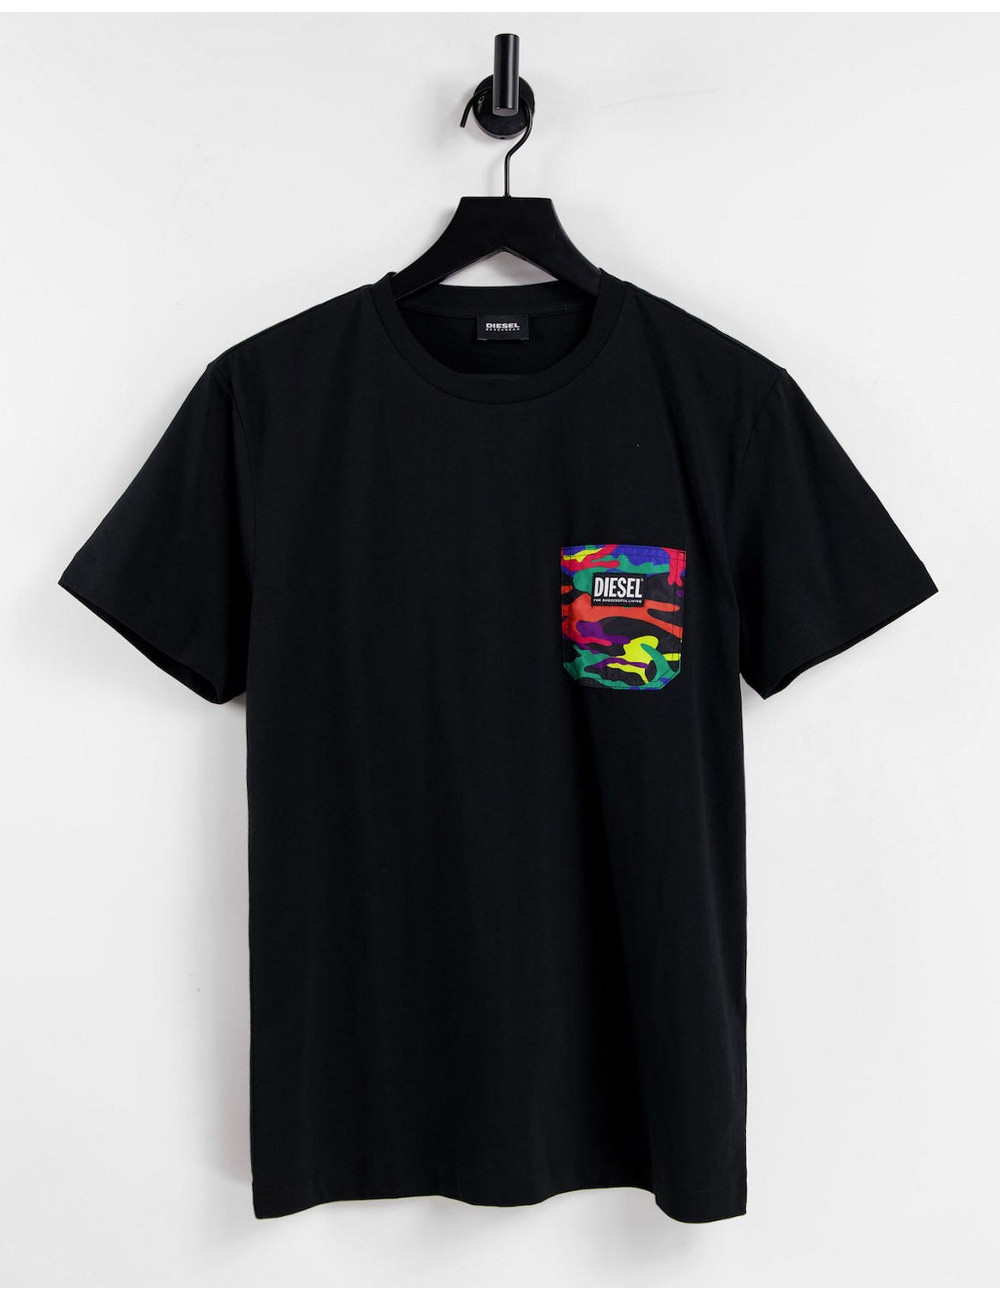 Diesel xPride t-shirt in black